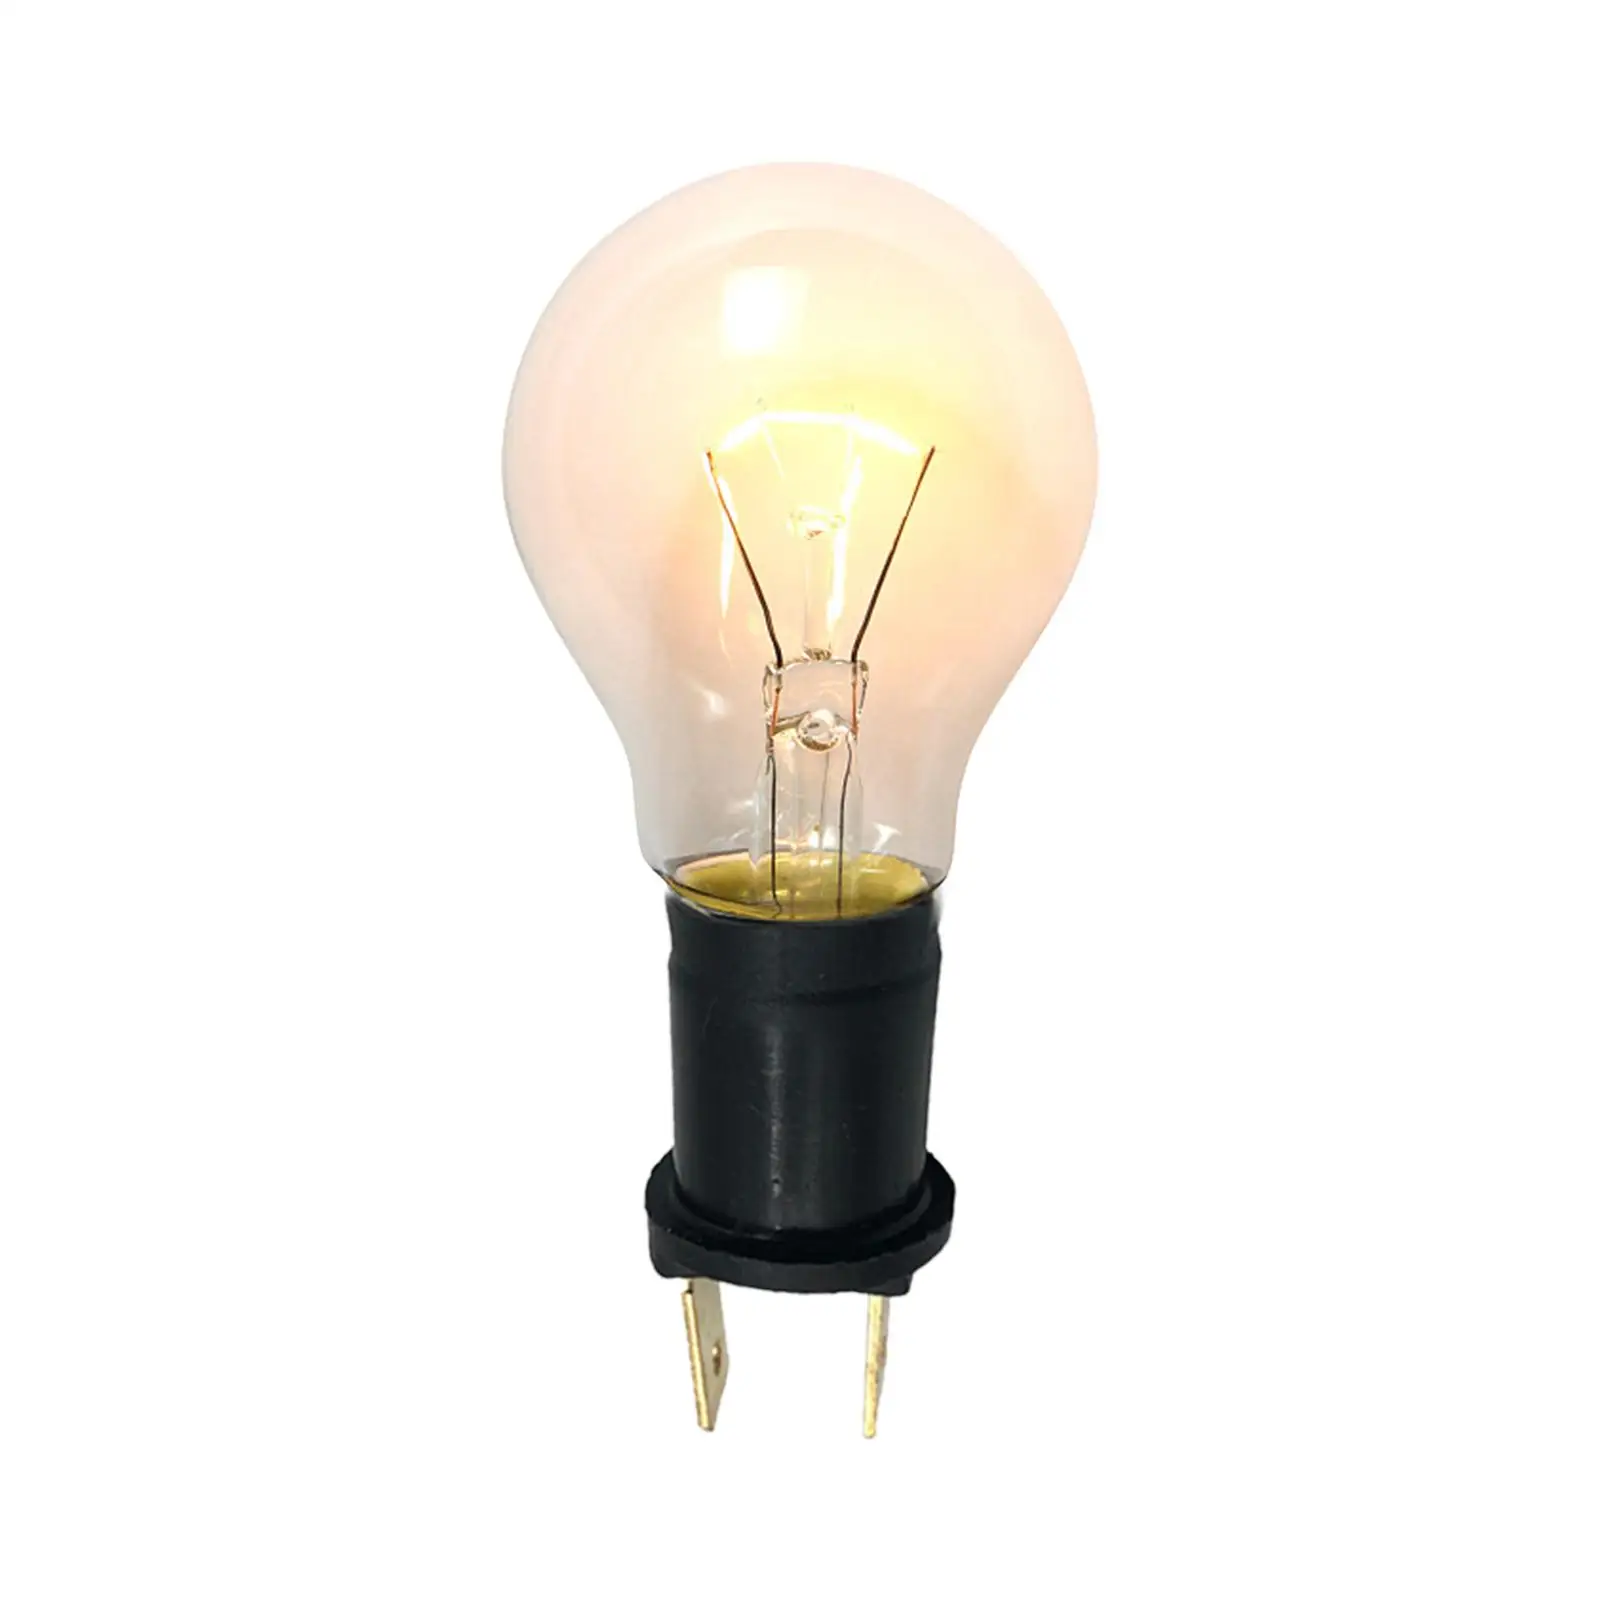 Side Light Lamp Holder Replace Bulb Holder Side Light Lamp for 233C 12V 4W 227 24V 5W 433A 12V 5W 433 12V 20W 233afl 48V 5W